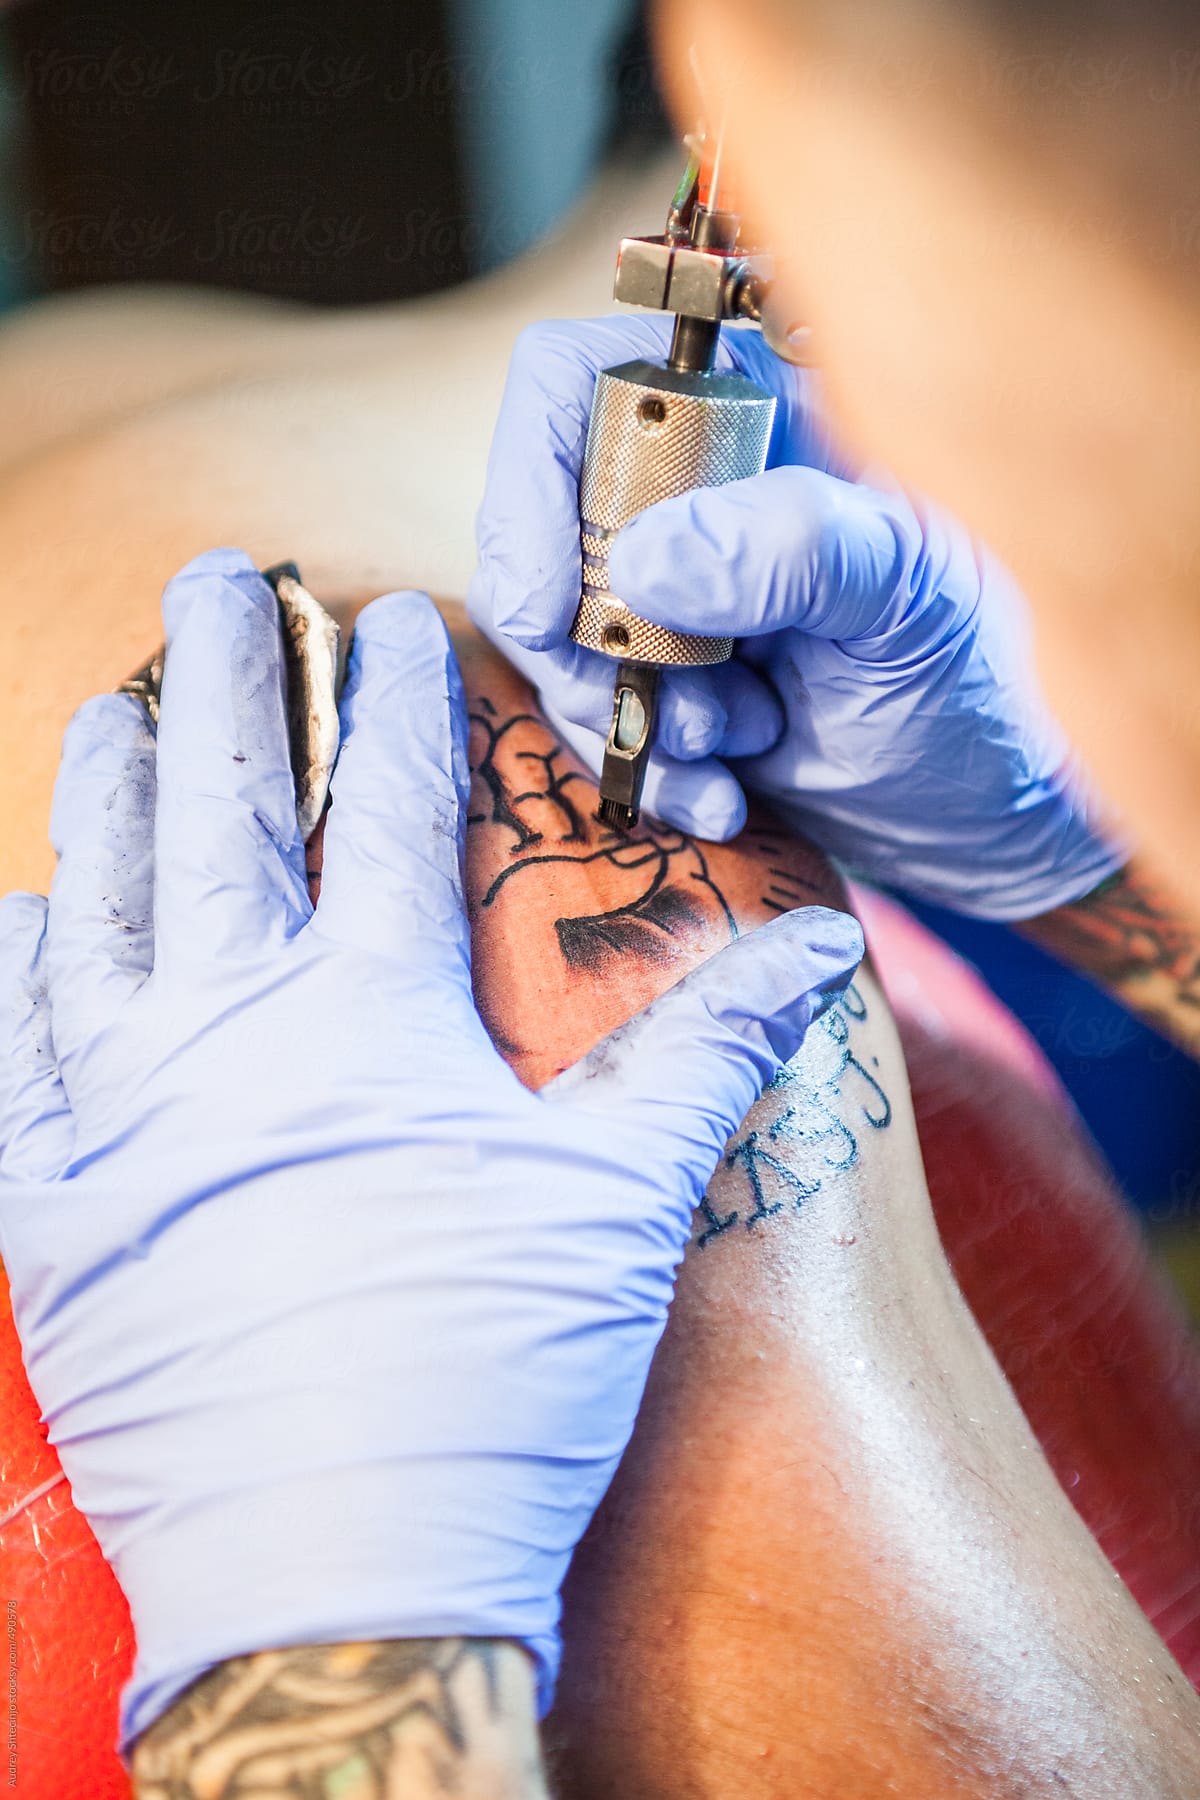 A tattoo artist using a shading gun.